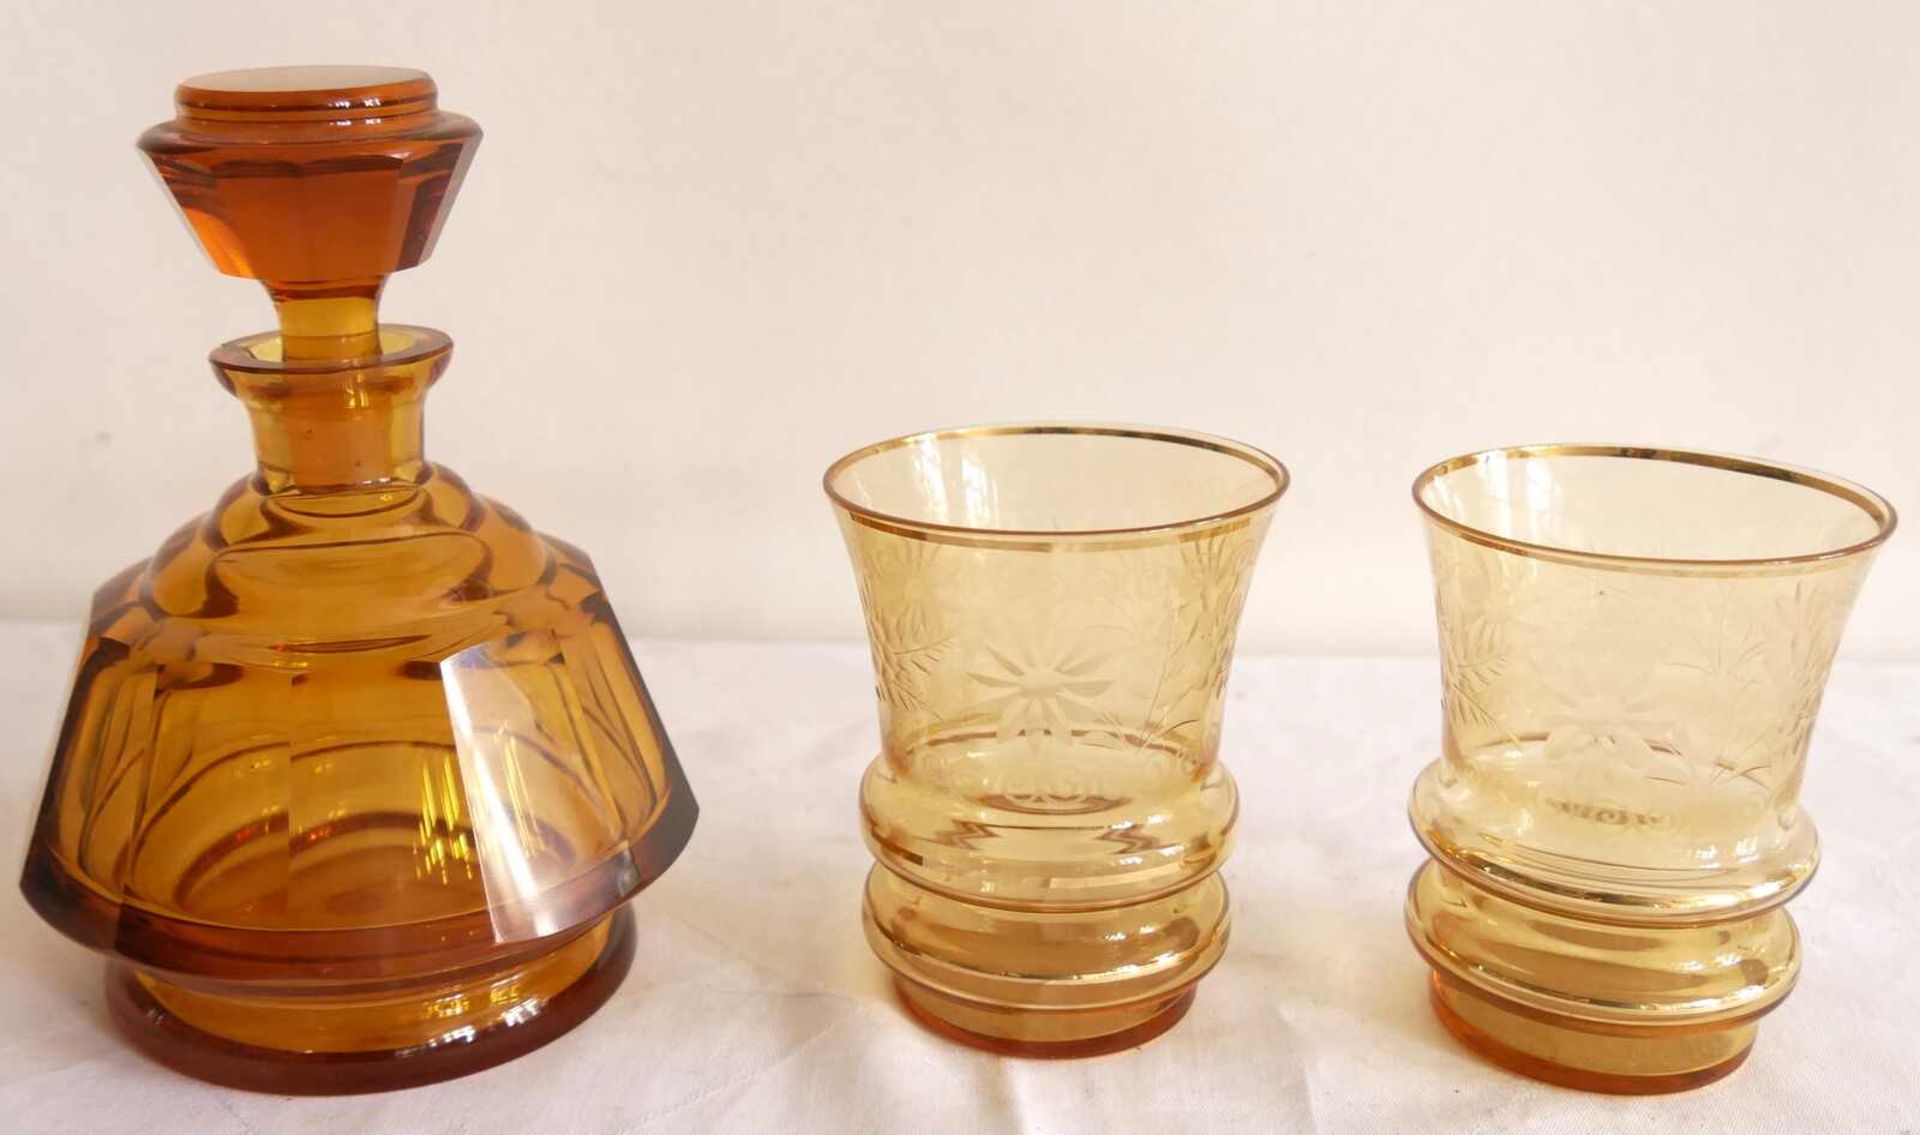 3 Teile Kristallglas wohl Böhmen, bernsteinfarben. Bestehend aus Stöpselflasche und 2 Gläser.